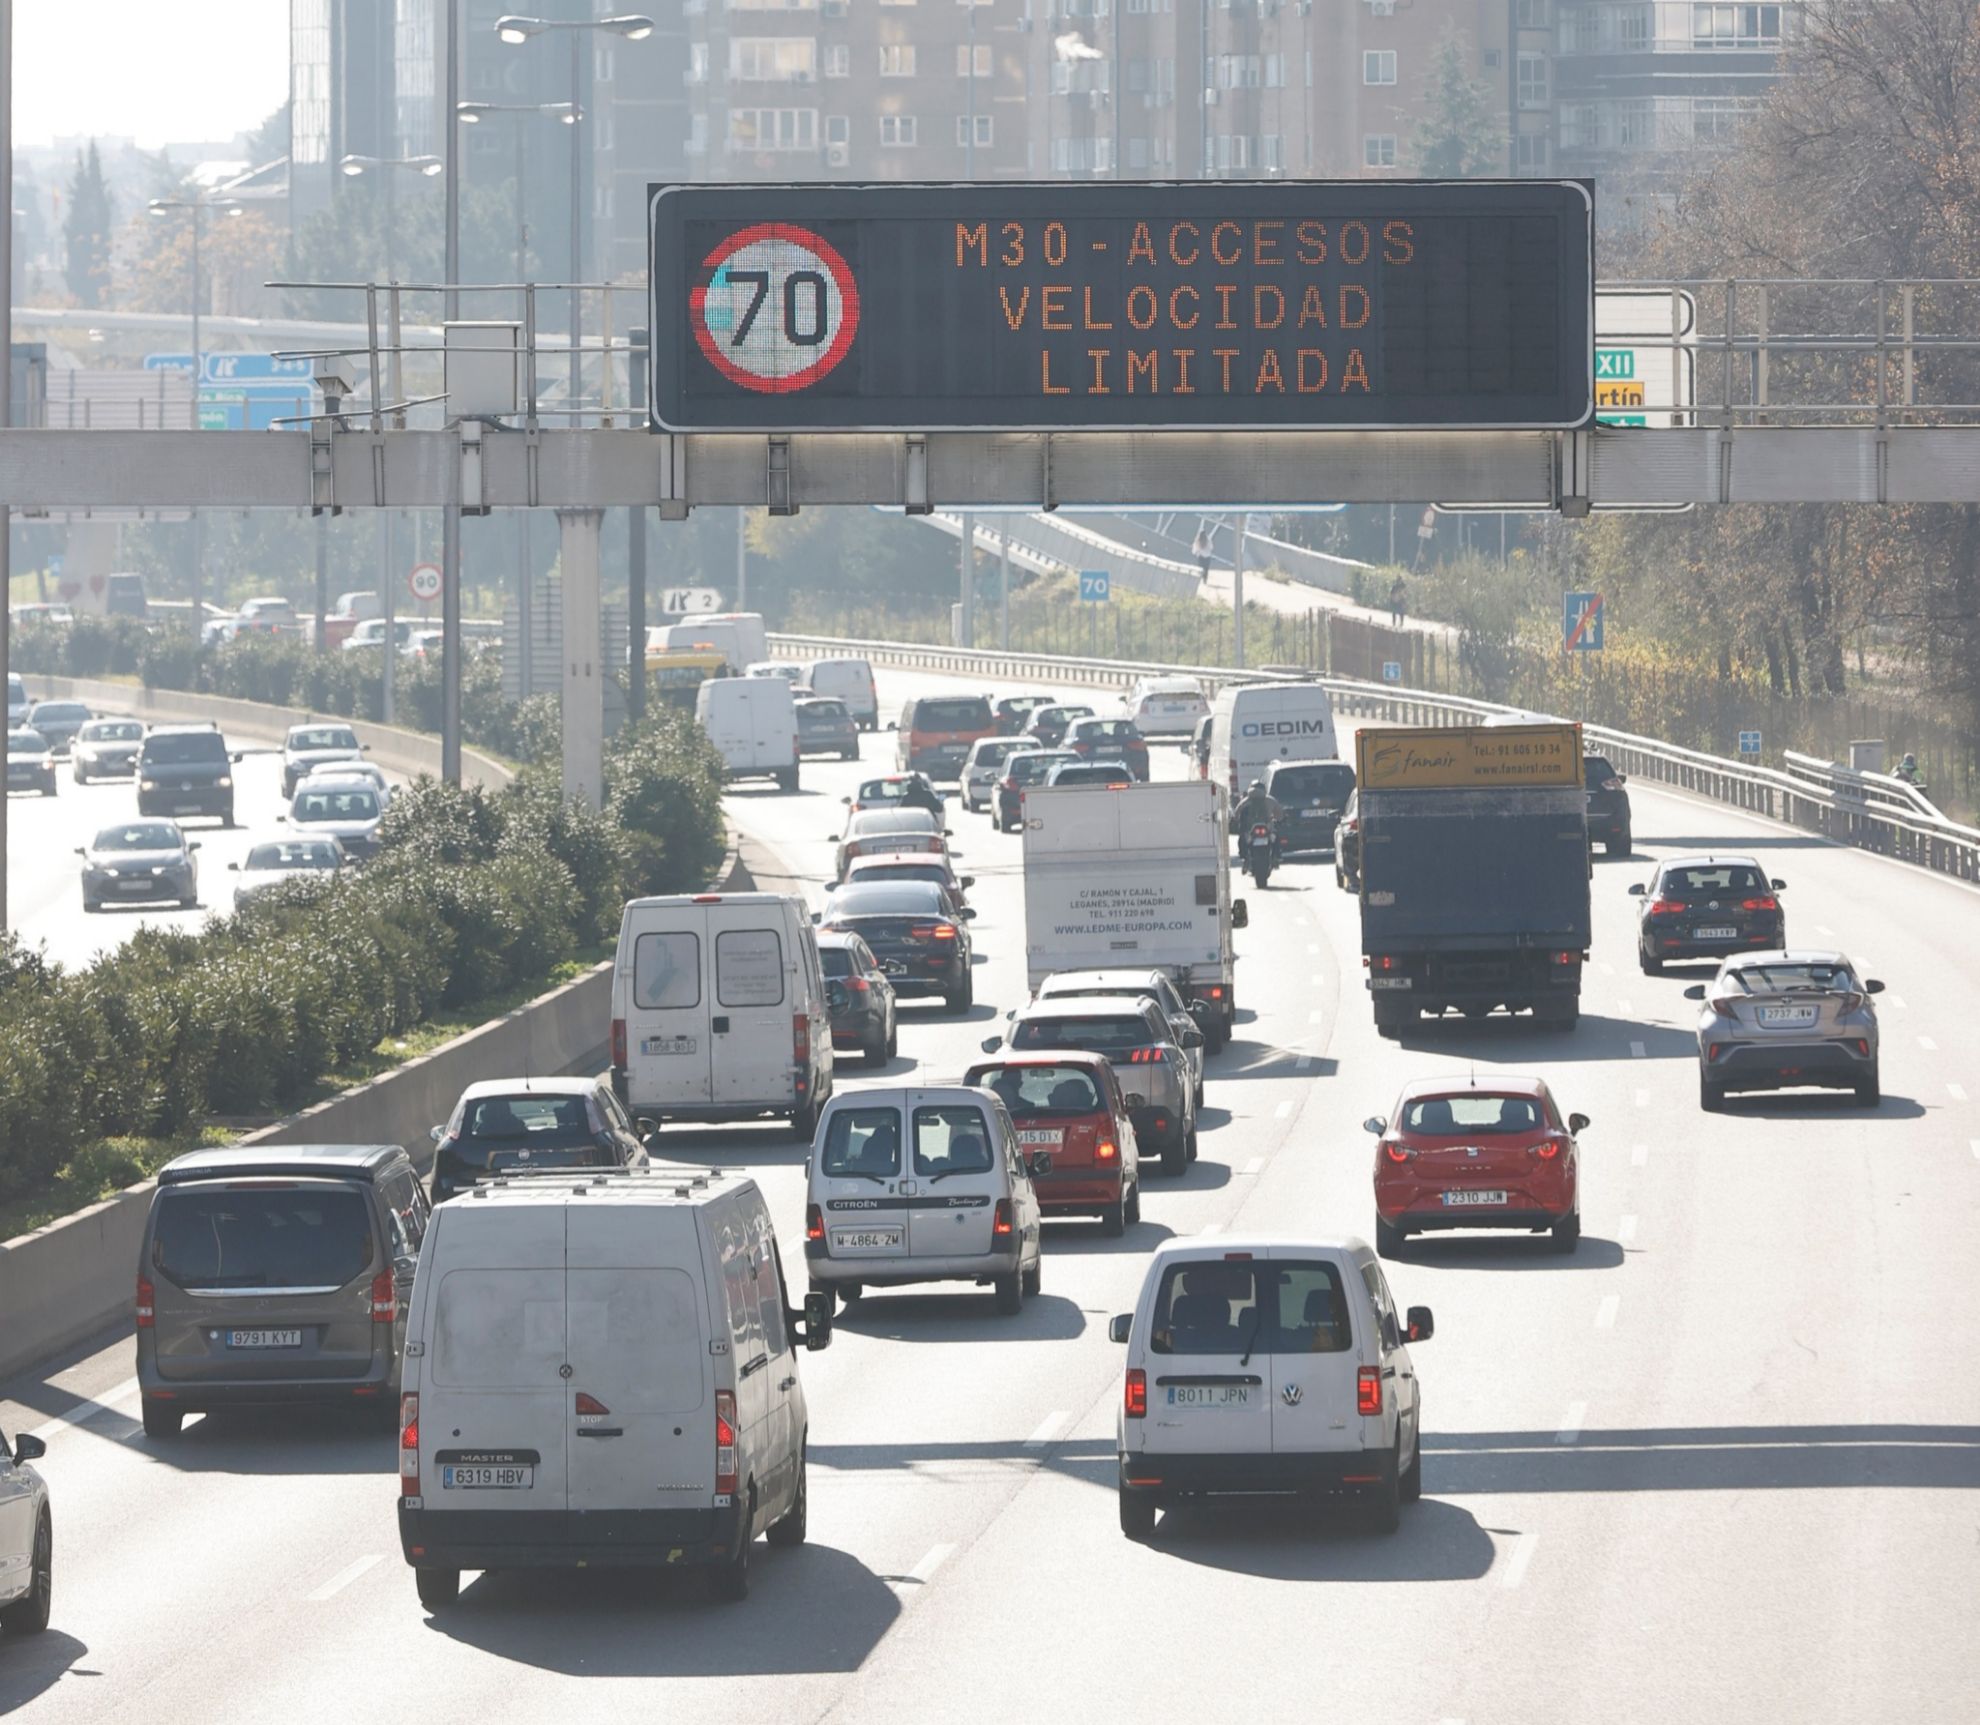 protocolo por alta contaminacion - coches electricos - limite 70 km/h - ayuntamiento de madrid - limites de velocidad - excepciones